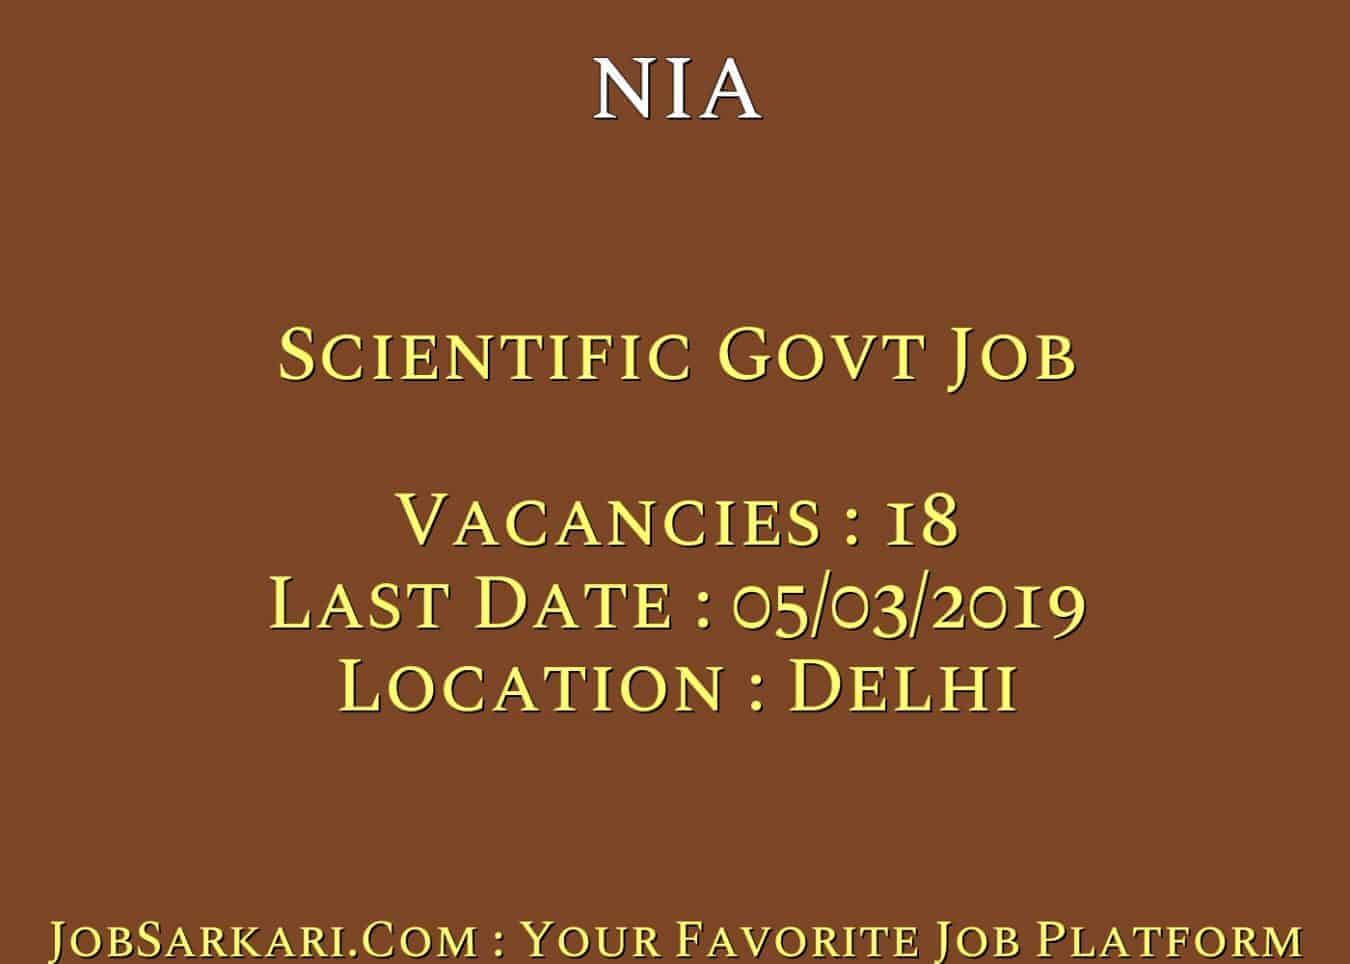 NIA Recruitment 2019 For Scientific Govt Job